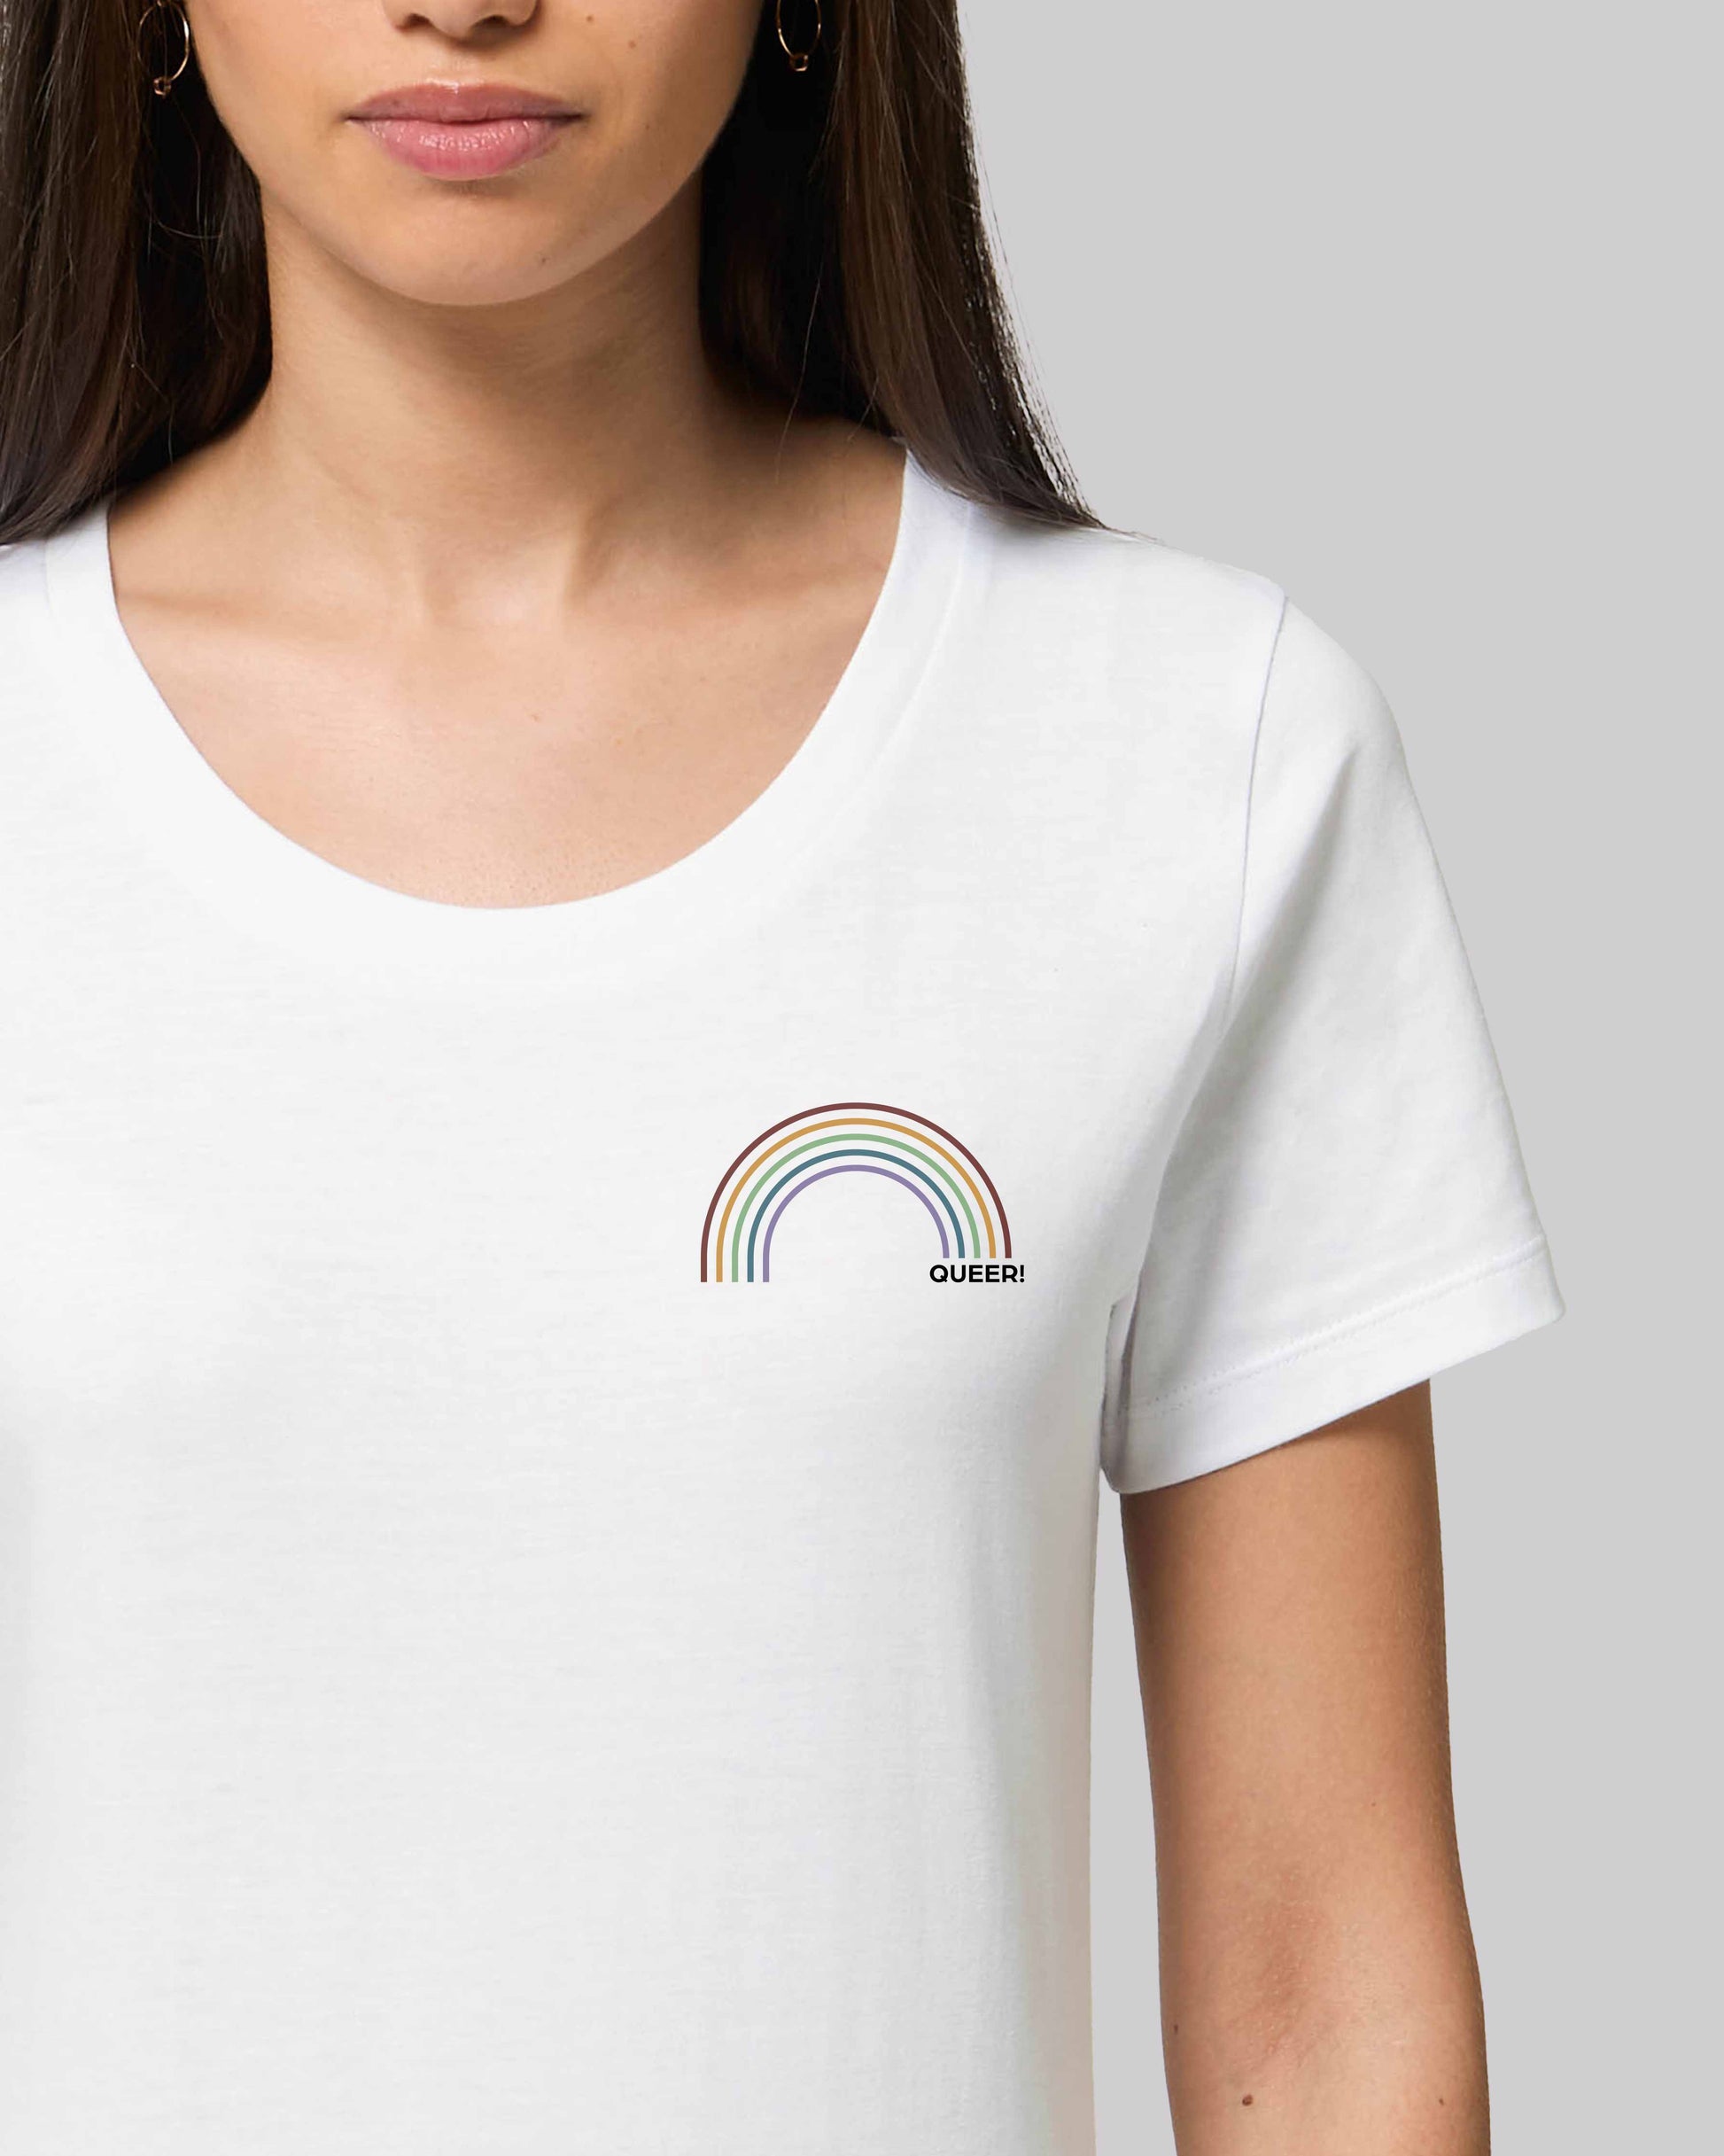 EINHORST® Organic Shirt tailliert in "Weiß" mit dem Motiv "queer Regenbogen" in der Kombination bunter Regenbogen mit schwarzer Schrift, Bild von weiblicher Person mit Shirt